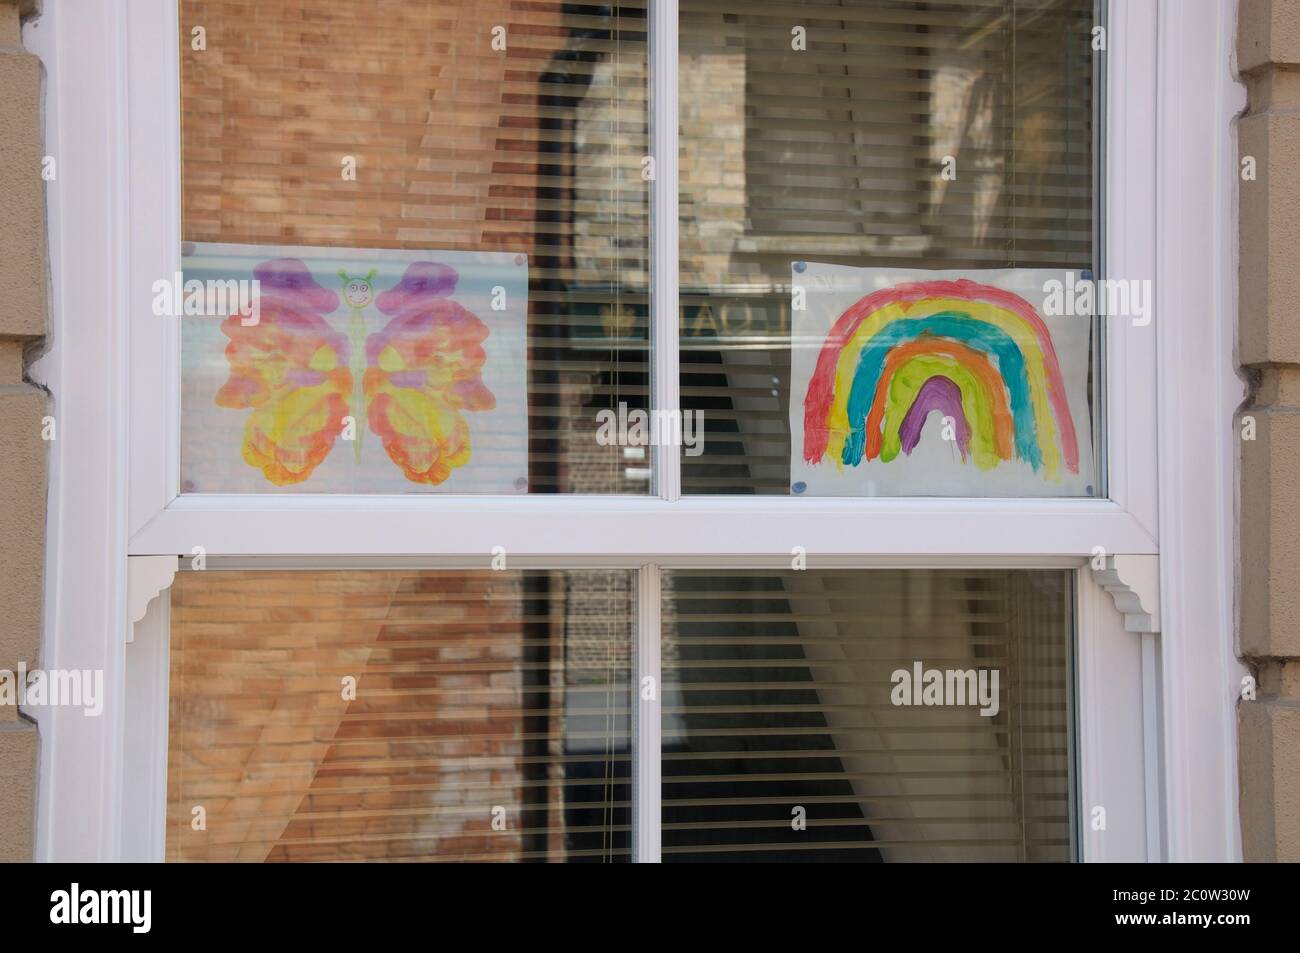 Dessins d’un arc-en-ciel et d’un papillon pour enfants, avec le message “Stay safe”, affichés dans la fenêtre d’une maison. La pandémie du coronavirus. Angleterre. Banque D'Images